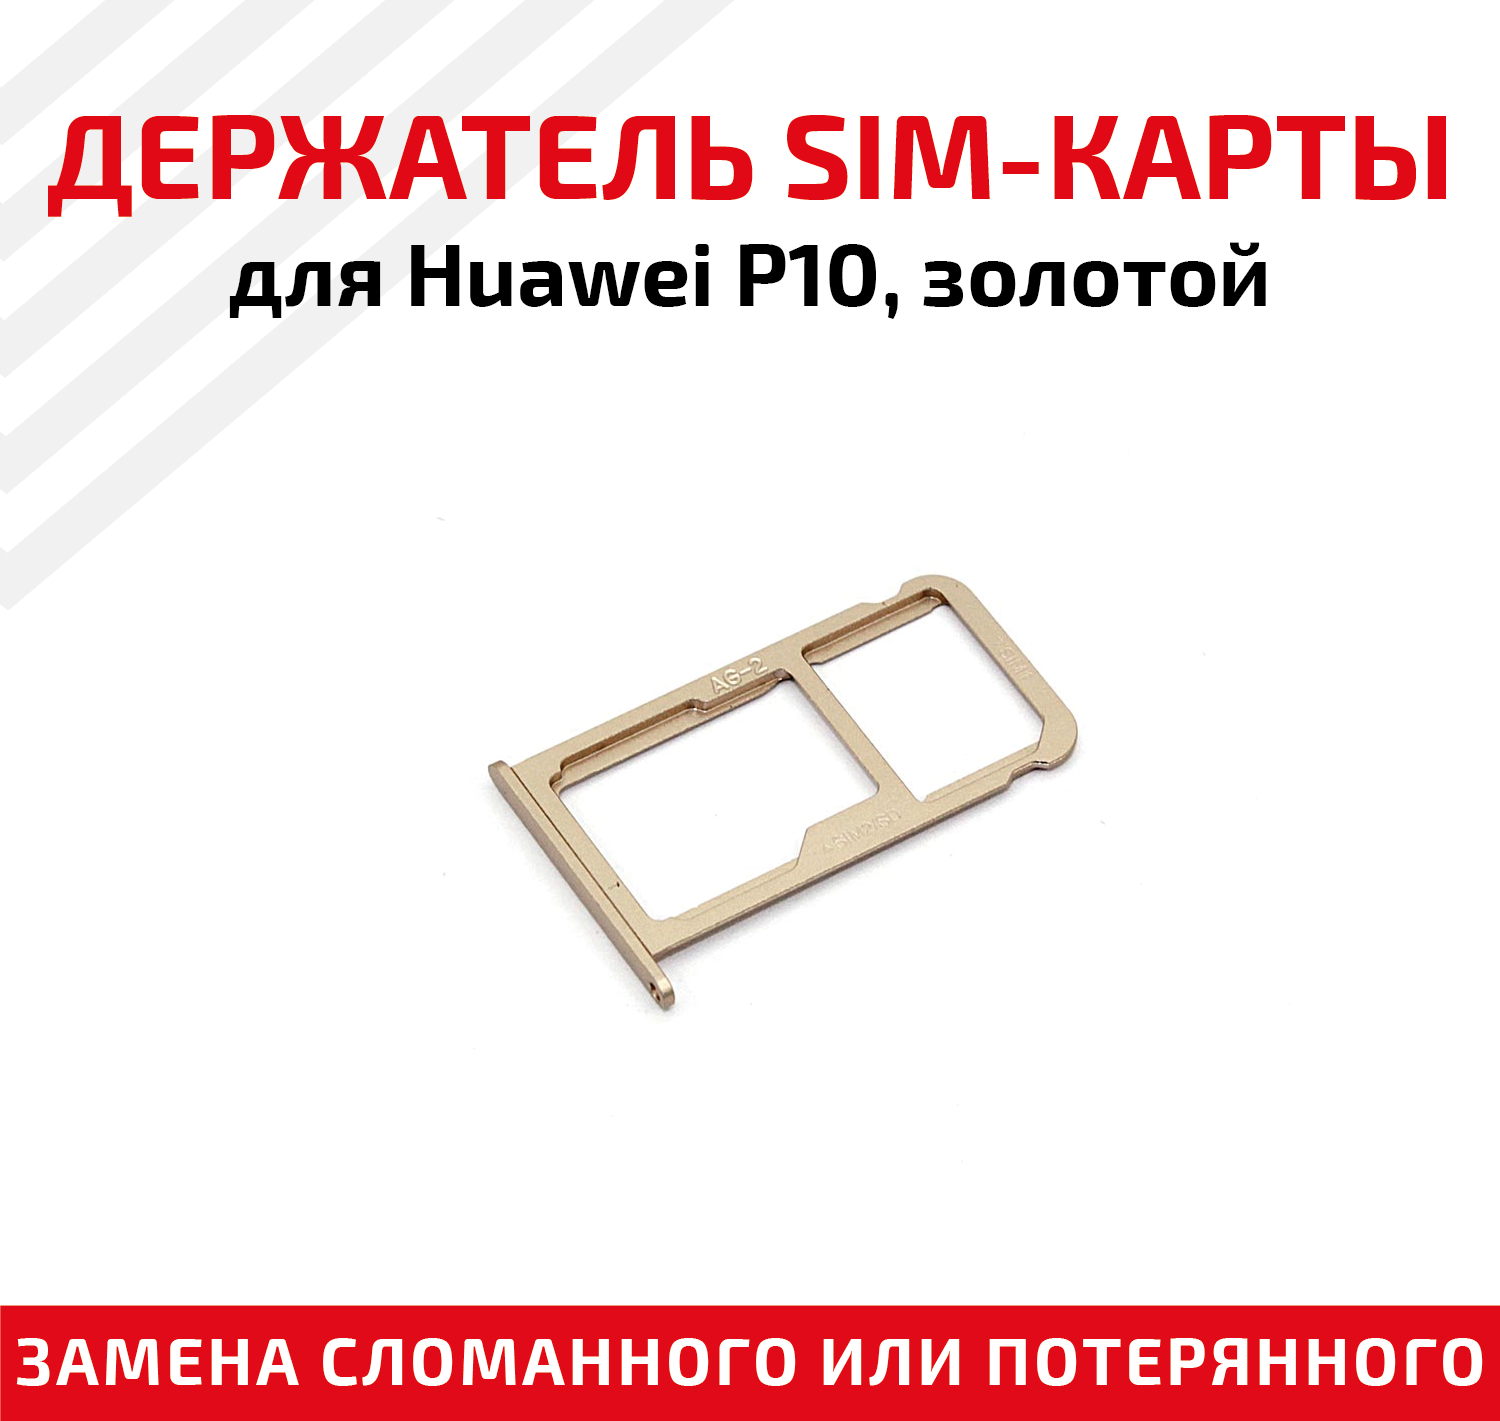 Лоток (держатель, контейнер, слот) SIM-карты для мобильного телефона (смартфона) Huawei P10, золотой